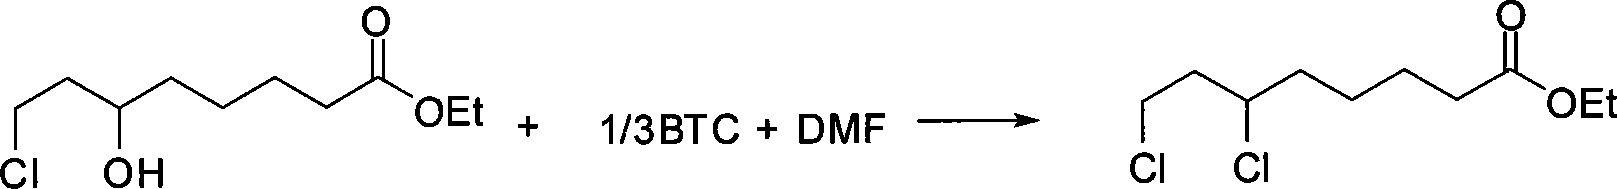 Chemical method for synthesizing 6,8-dichloro ethyl cacodylic acid caprylate